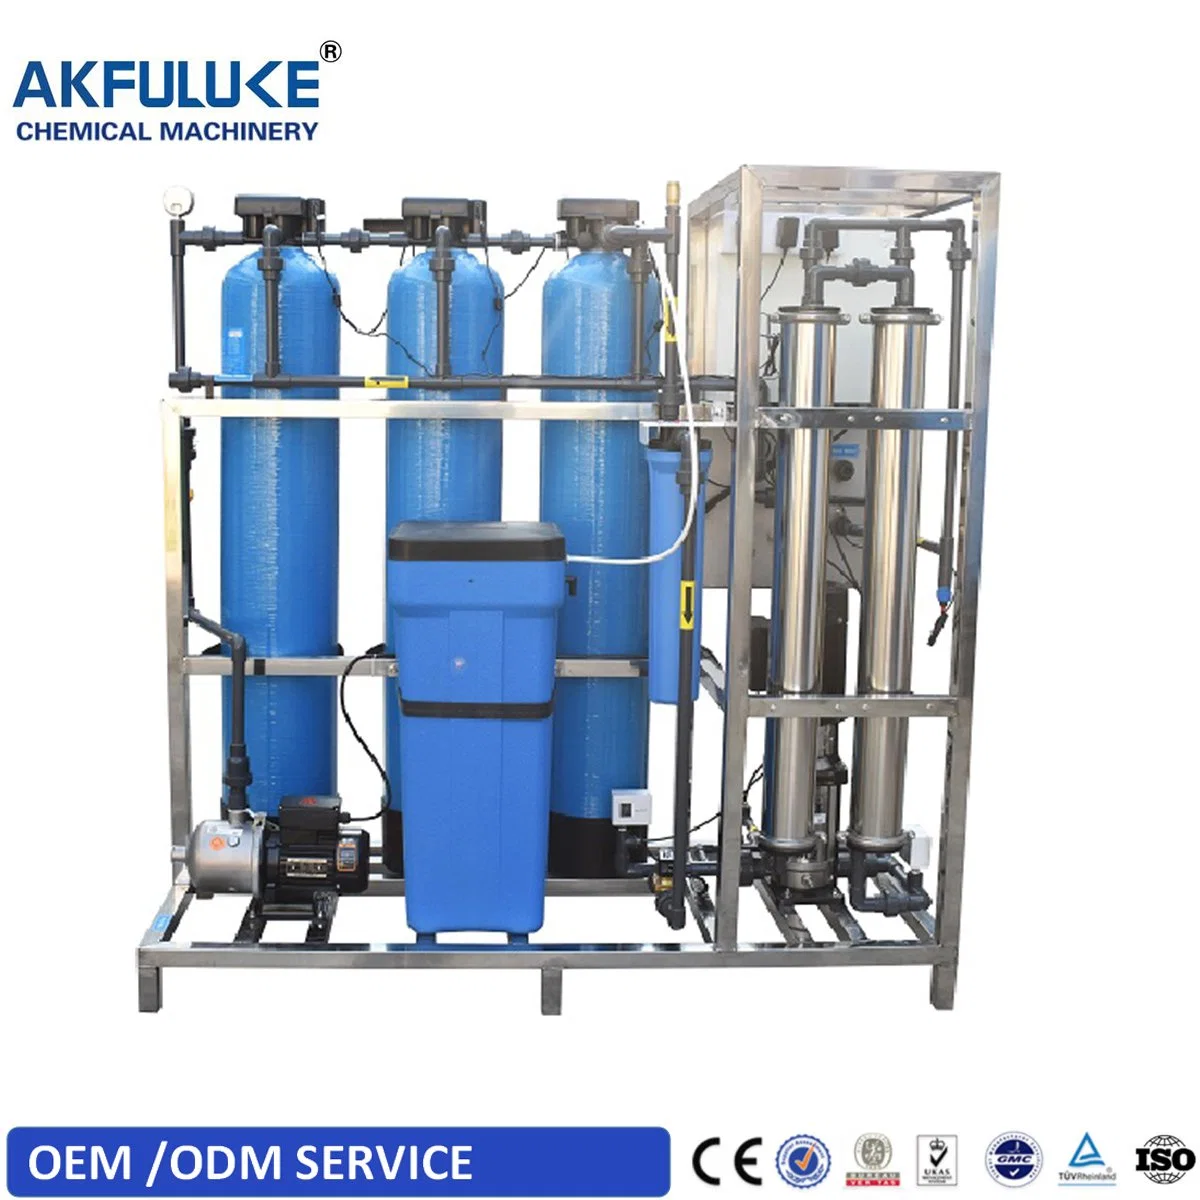 RO système d'ultrafiltration pour le traitement/purification de l'eau potable (usine UF)